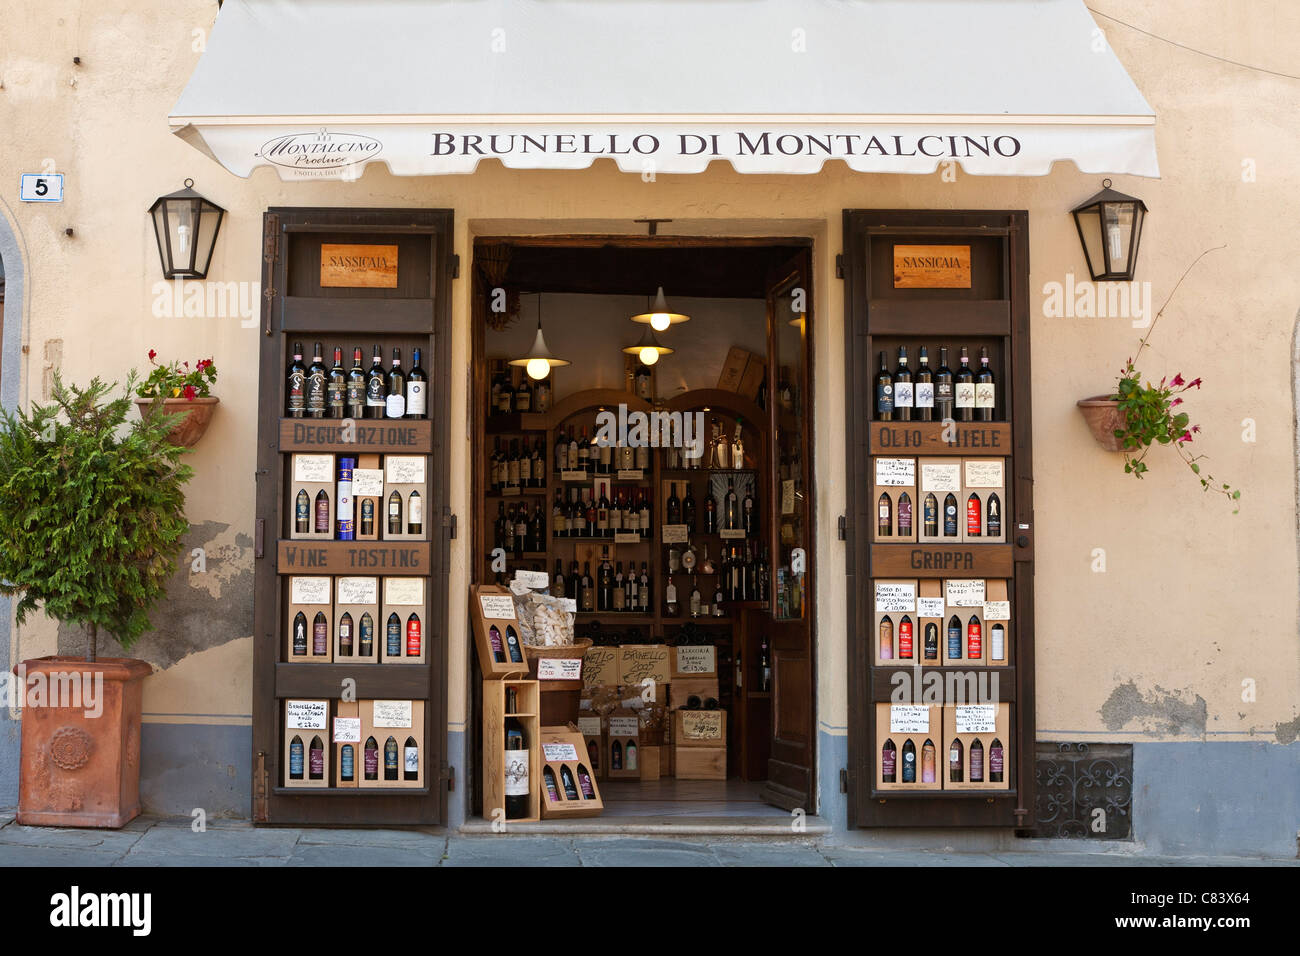 Boutique de vins, Montalcino, Toscane, Italie Banque D'Images